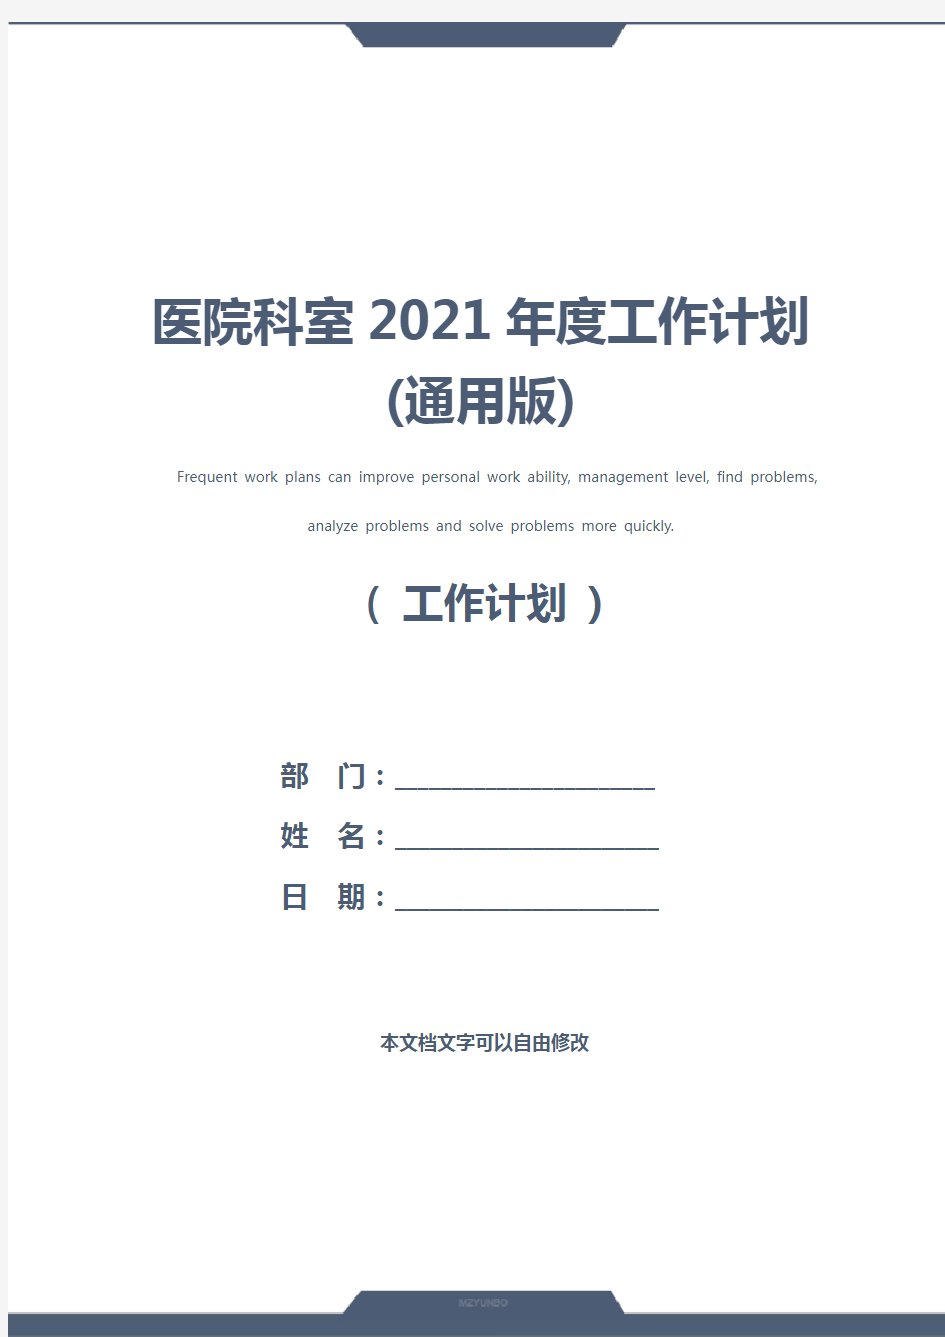 医院科室2021年度工作计划(通用版)